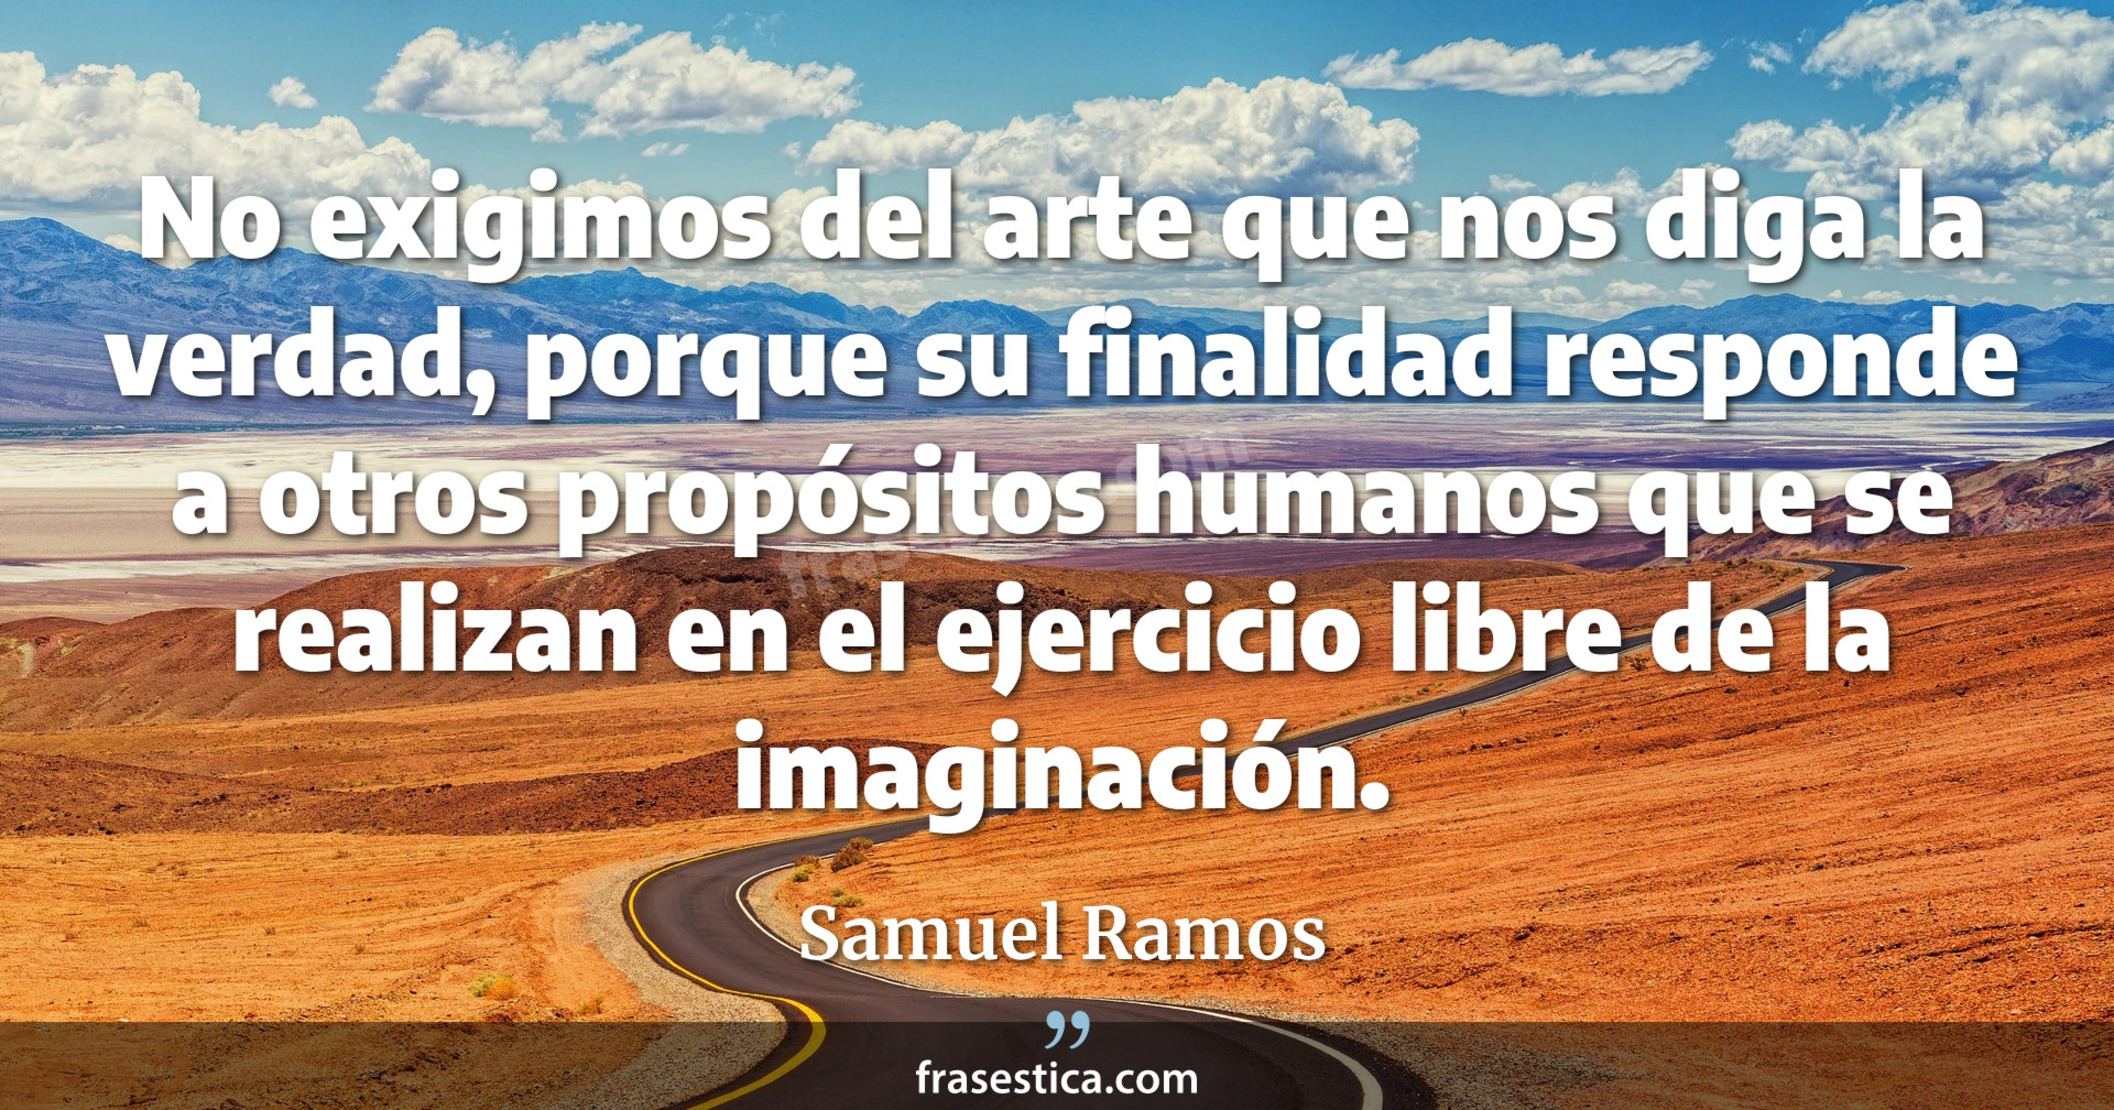 No exigimos del arte que nos diga la verdad, porque su finalidad responde a otros propósitos humanos que se realizan en el ejercicio libre de la imaginación. - Samuel Ramos